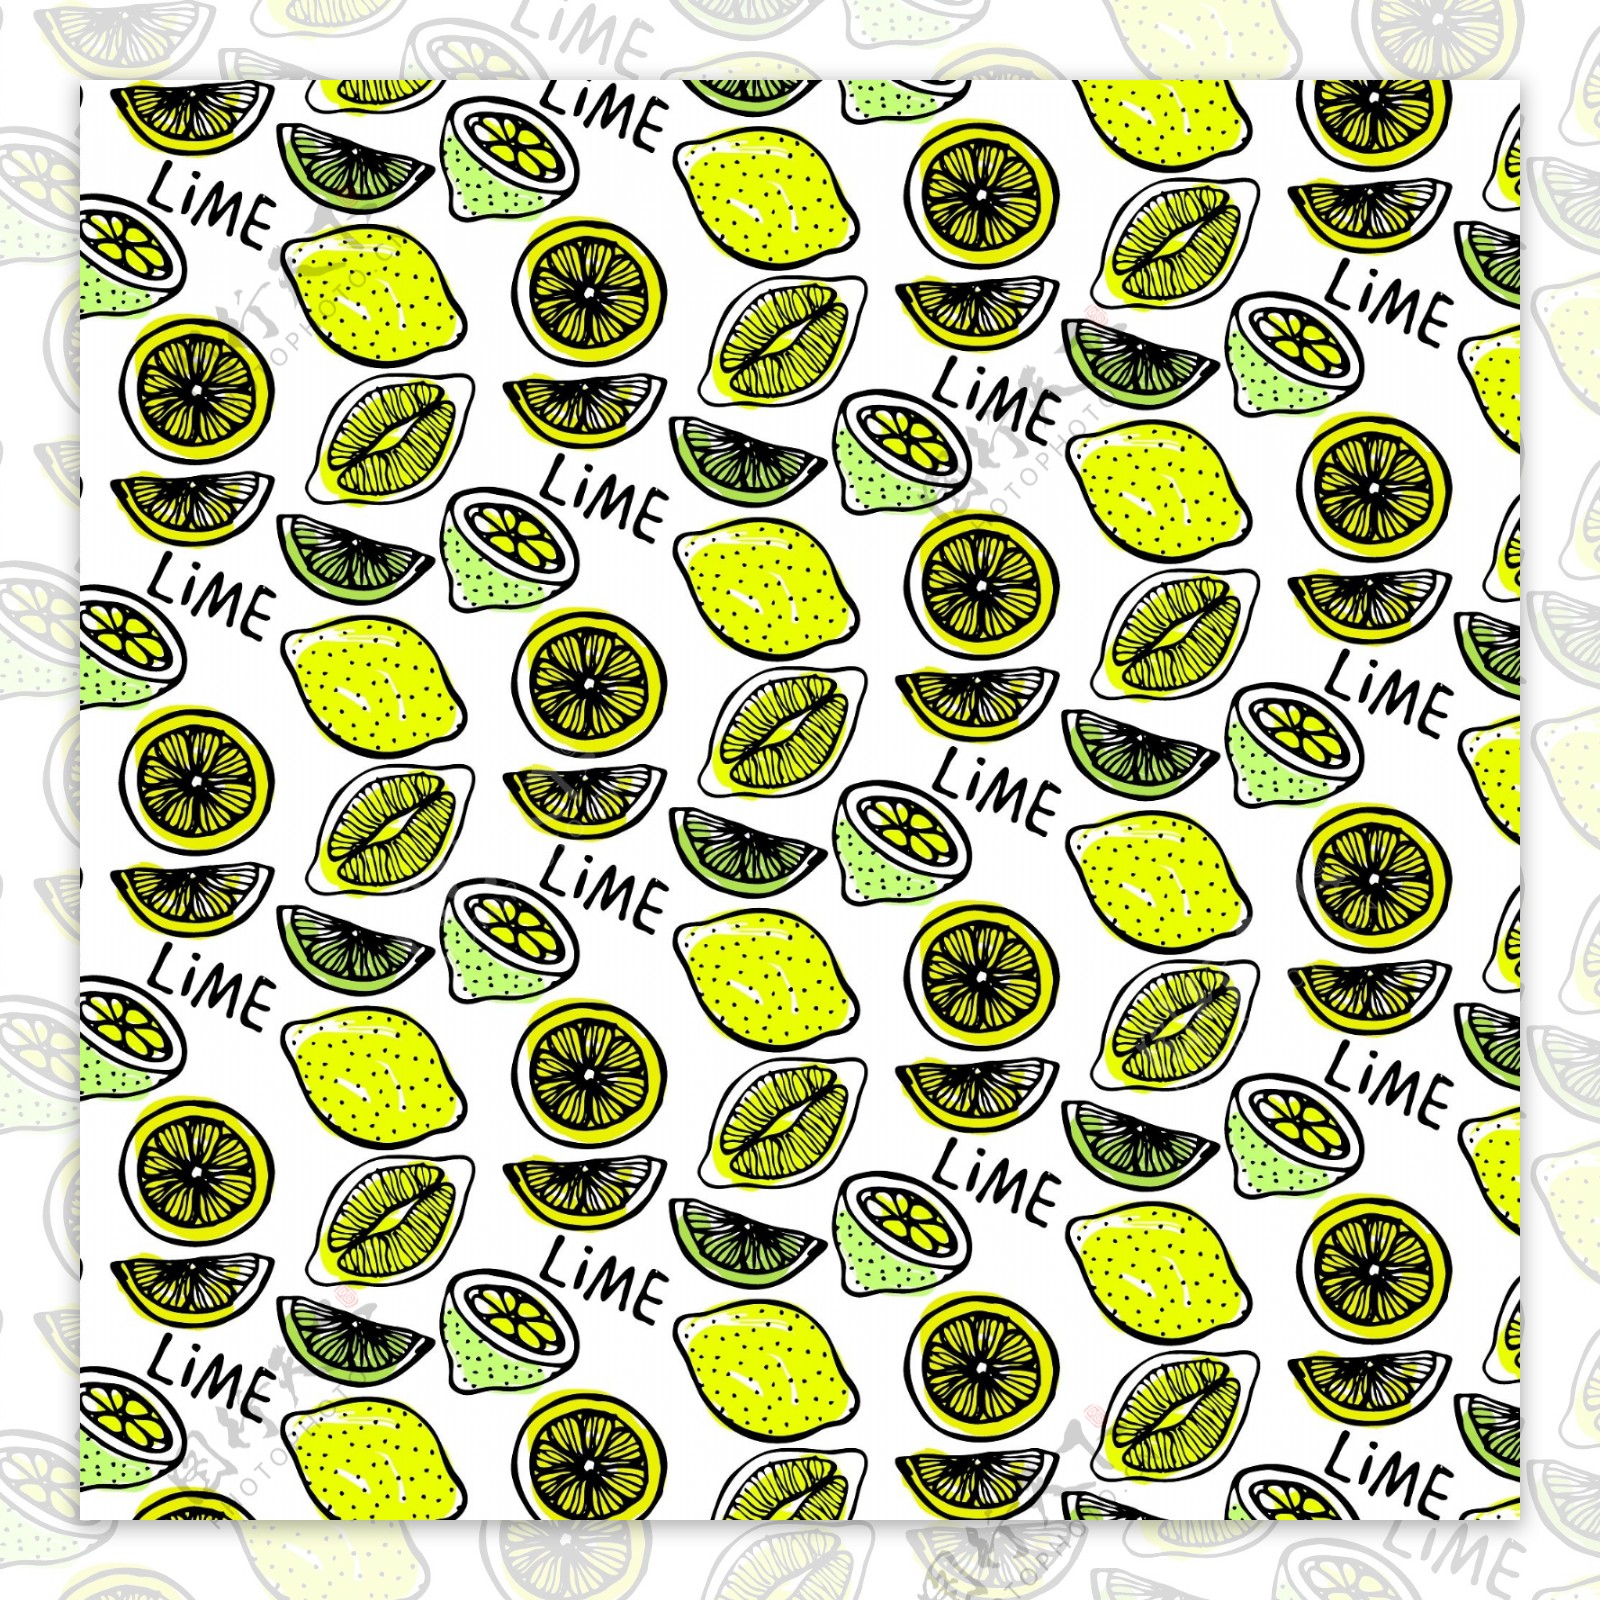 彩绘柠檬无缝背景矢量素材